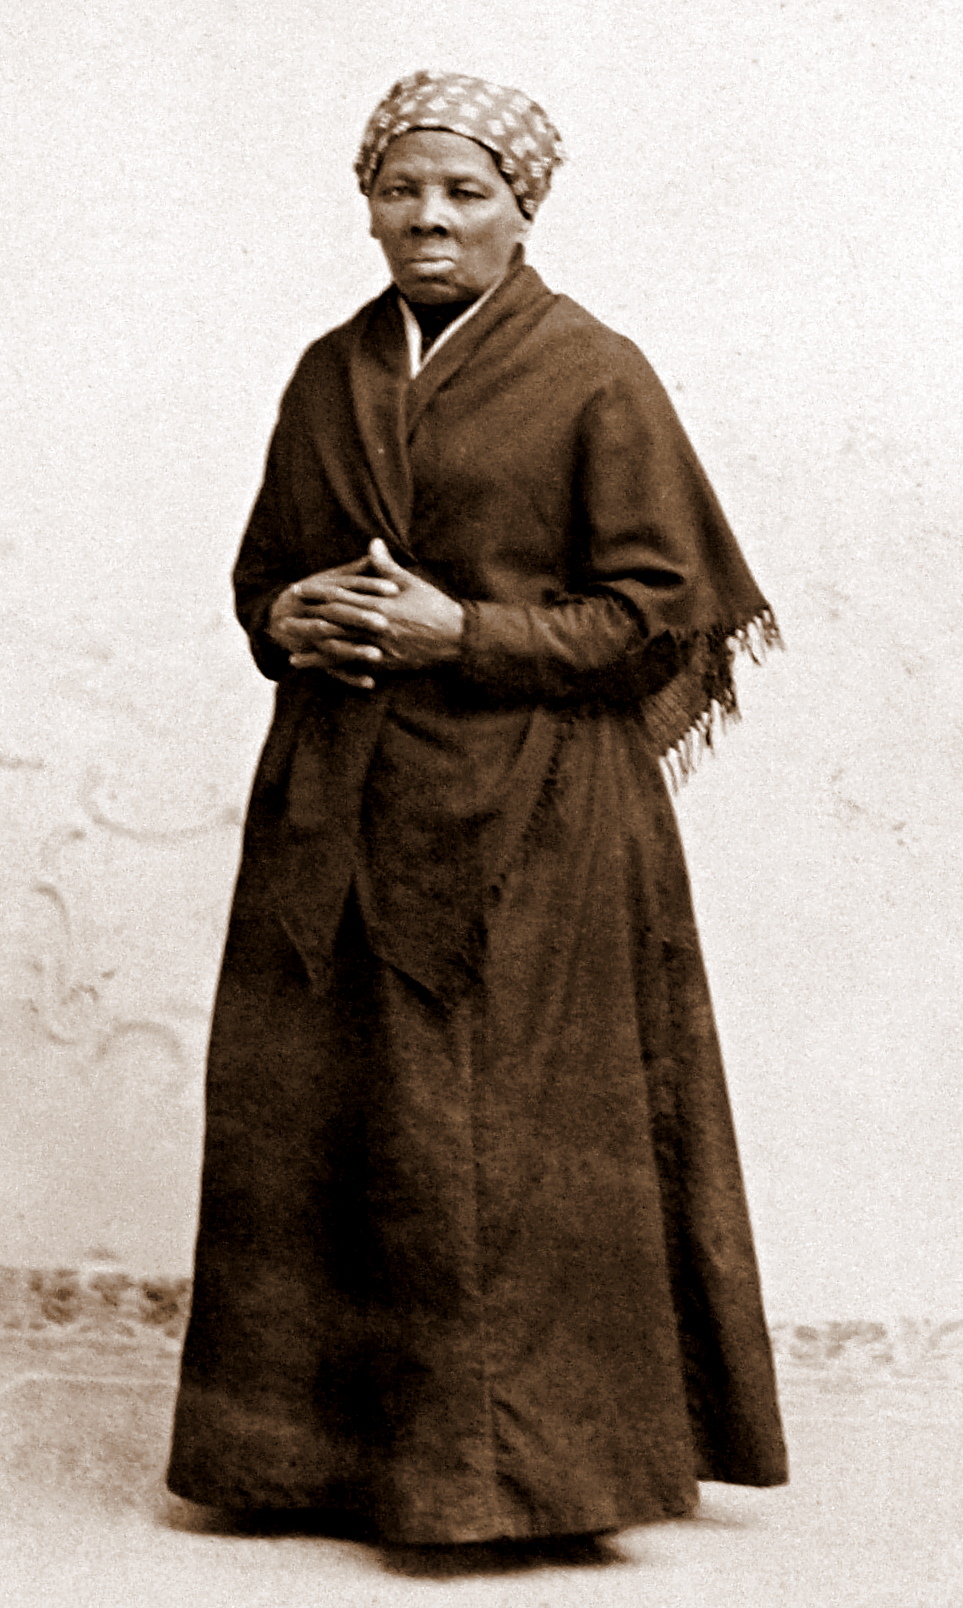 https://news.delaware.gov/files/2014/03/Harriet-Tubman.jpg